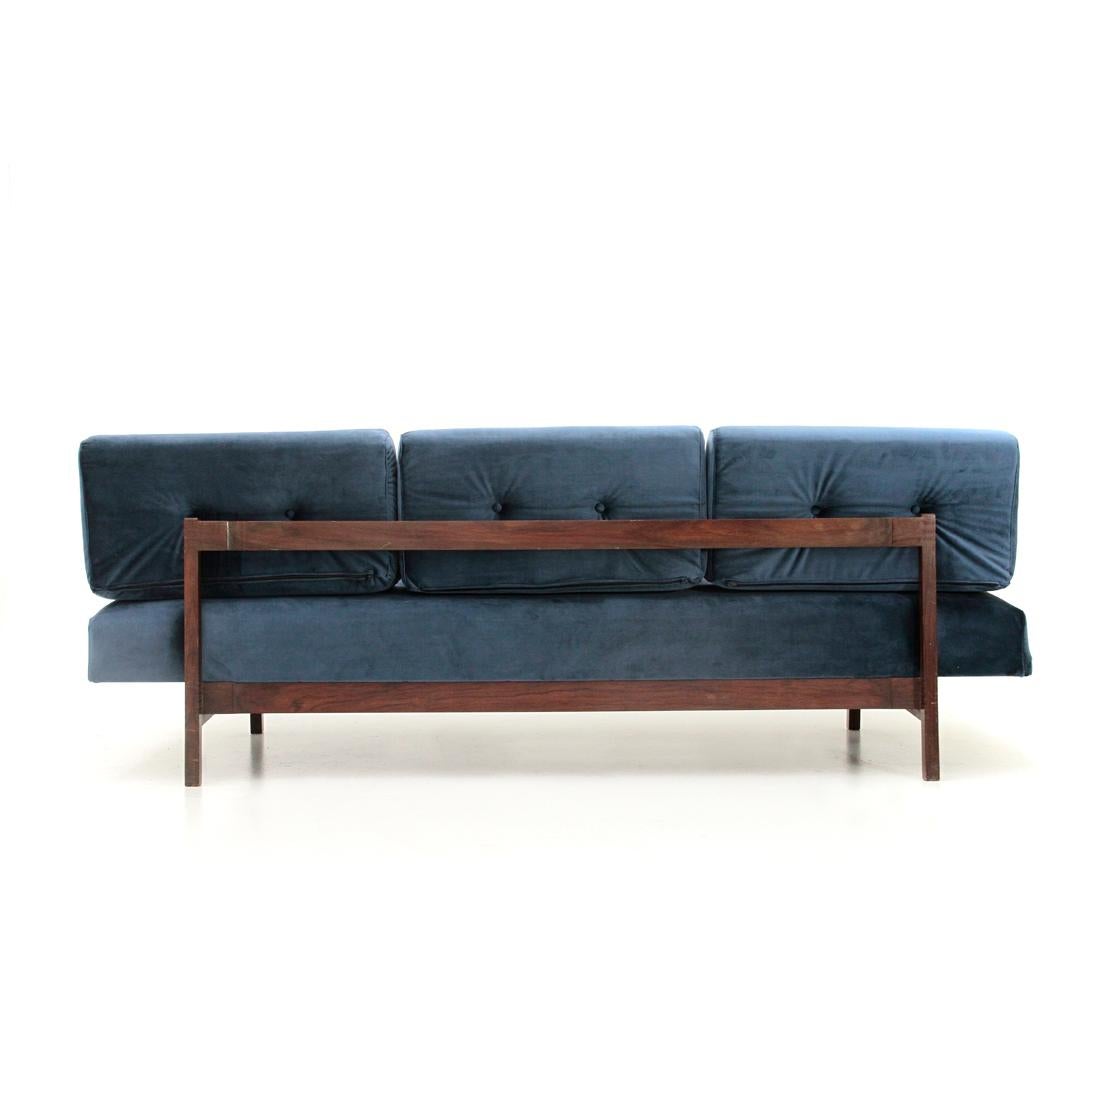 Mid-20th Century Midcentury Italian Blue Velvet Sofa Model 872 by Gianfranco Frattini for Cassin